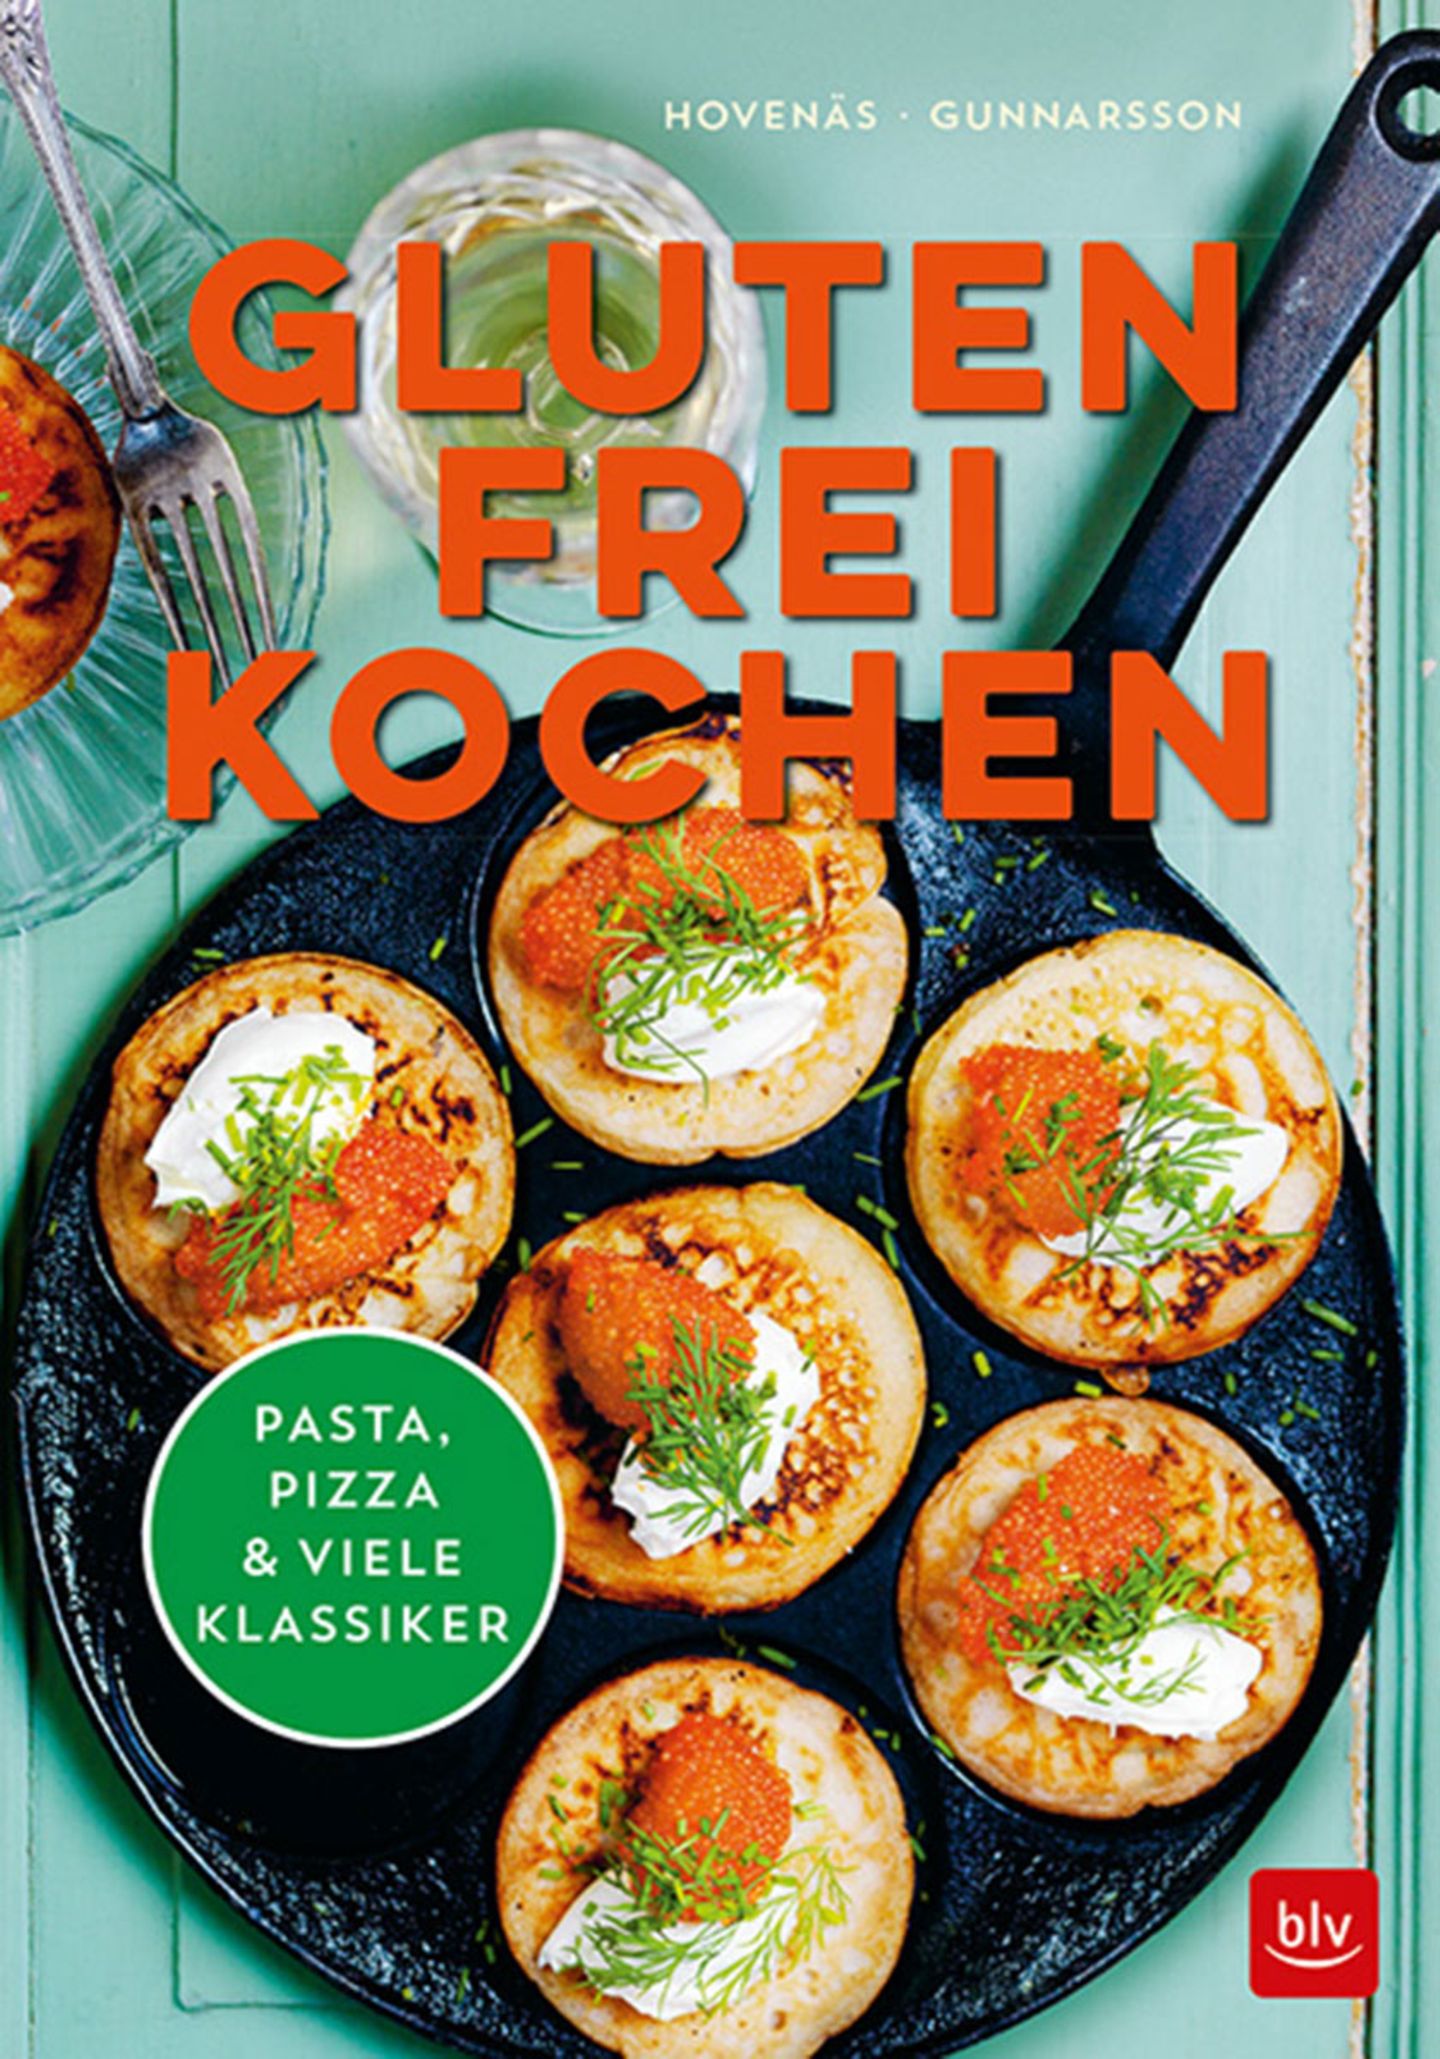 Kochbuch von Hovenäs und Gunnarsson "Glutenfrei Kochen"